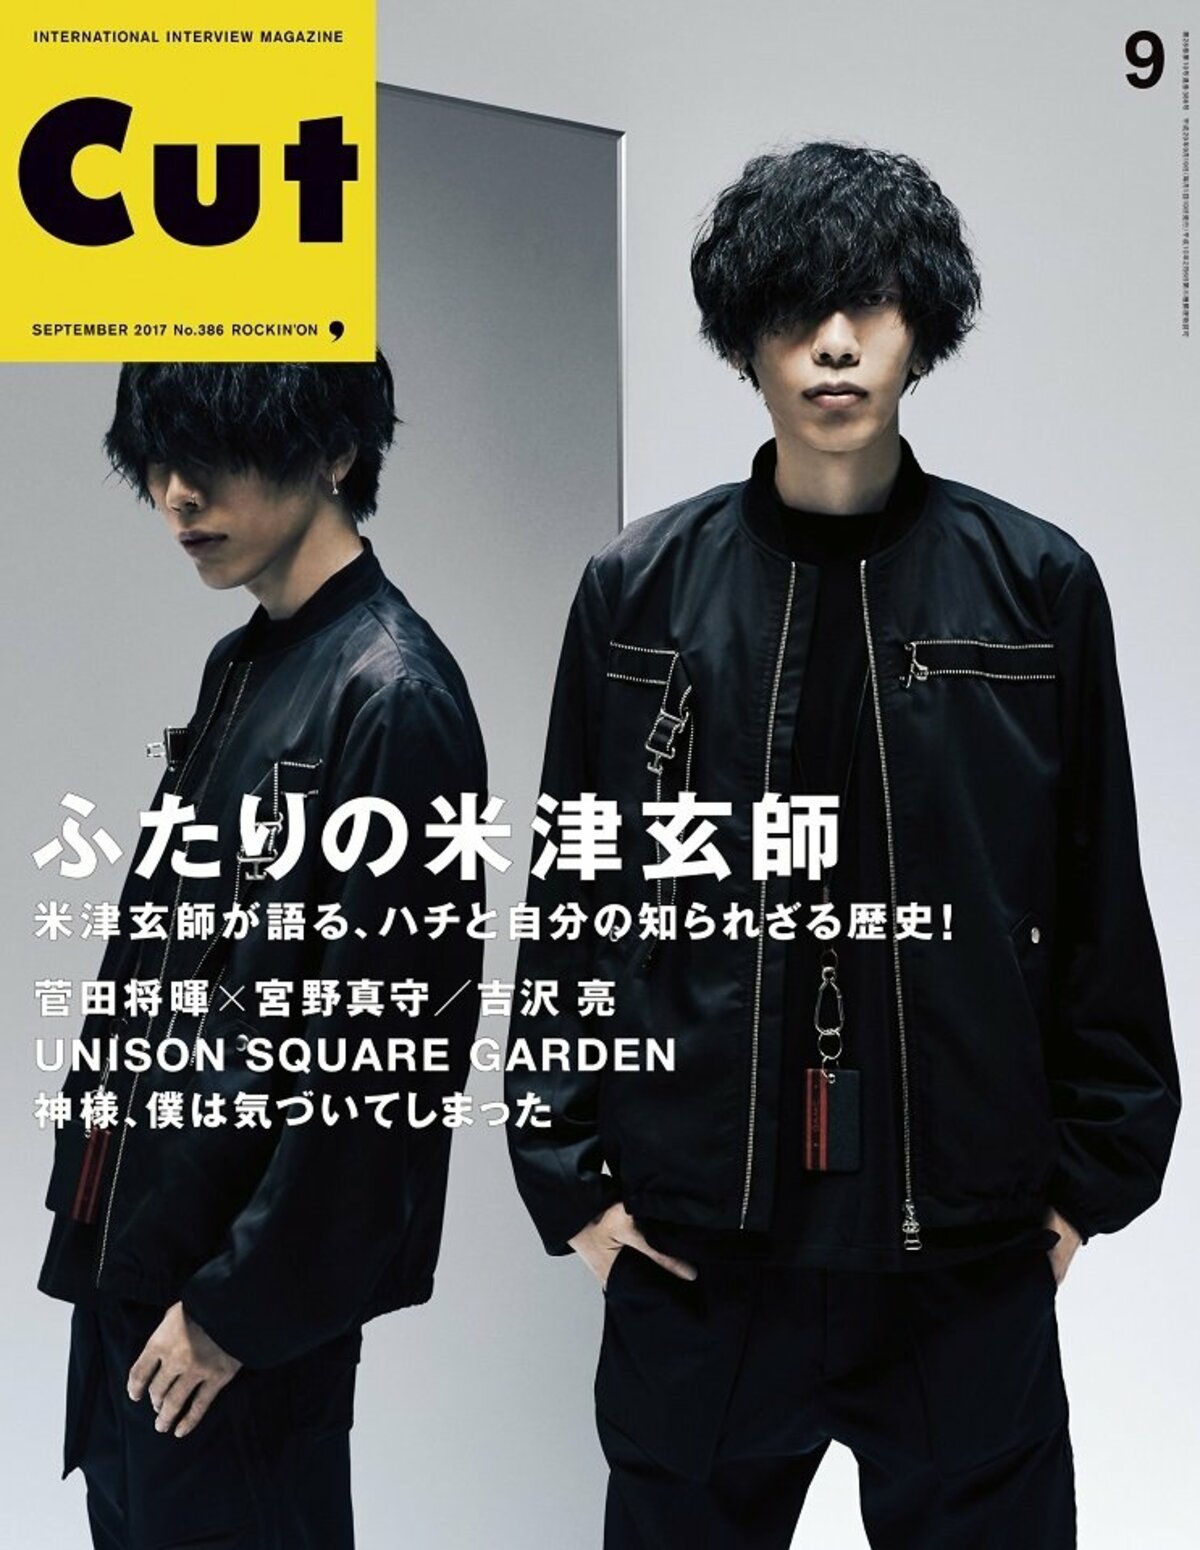 ふたりの“米津玄師” 雑誌「CUT」の表紙を飾る | 音楽 | ABEMA TIMES 